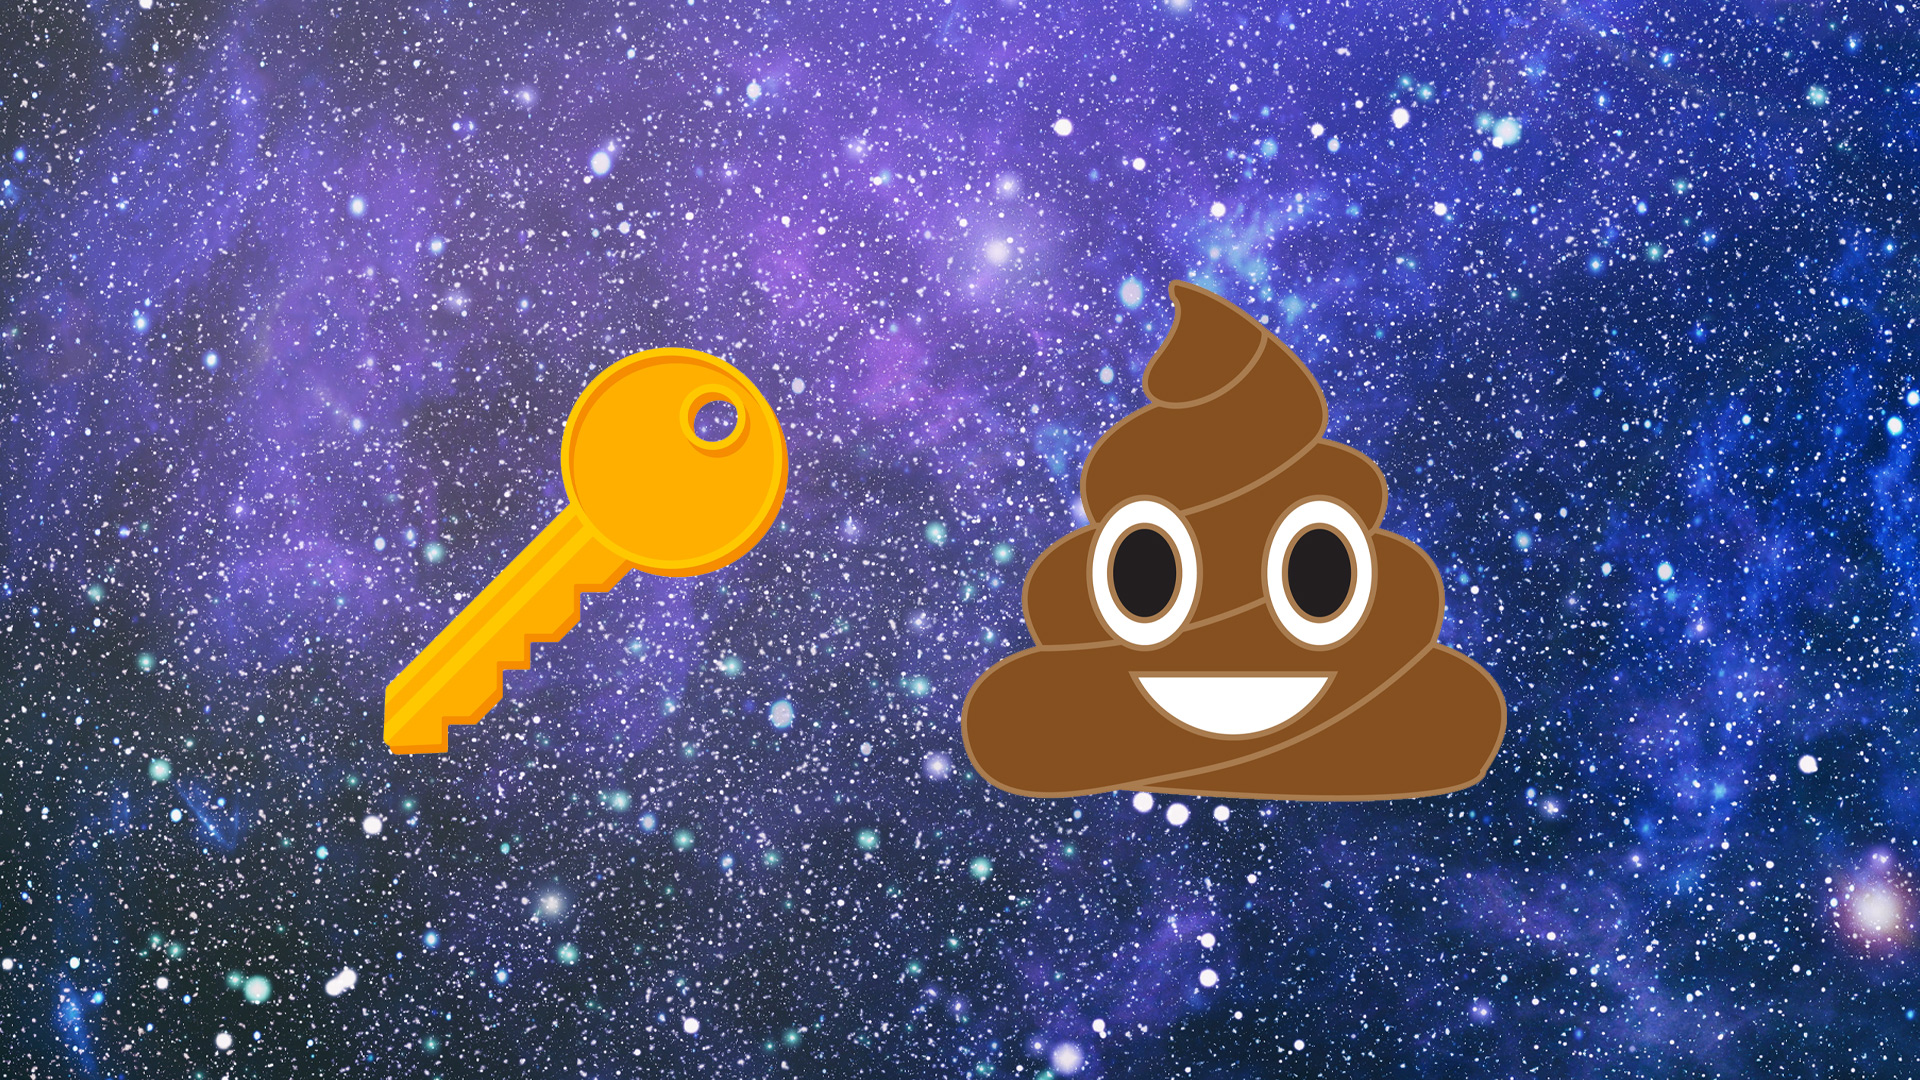 Key, poop emojis